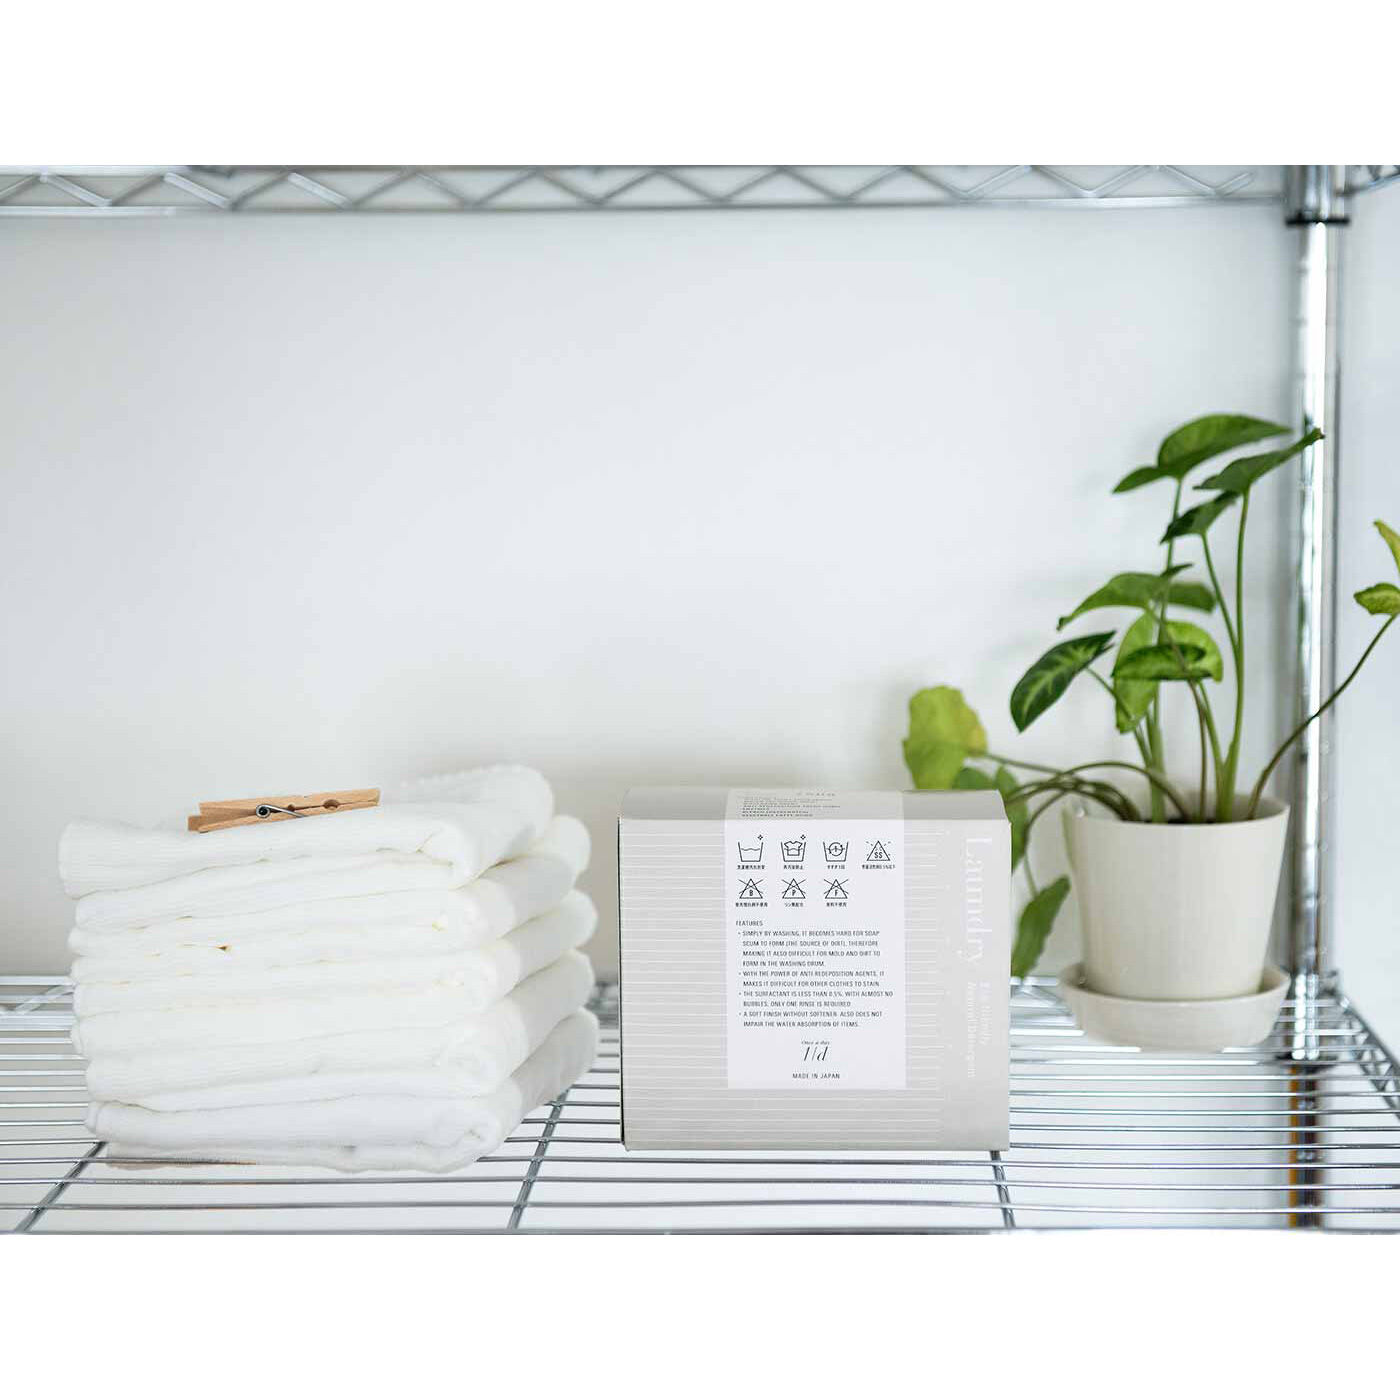 フェリシモの雑貨 クラソ|1/d for Laundry 洗濯洗剤の会|インテリアになじむパッケージデザイン。